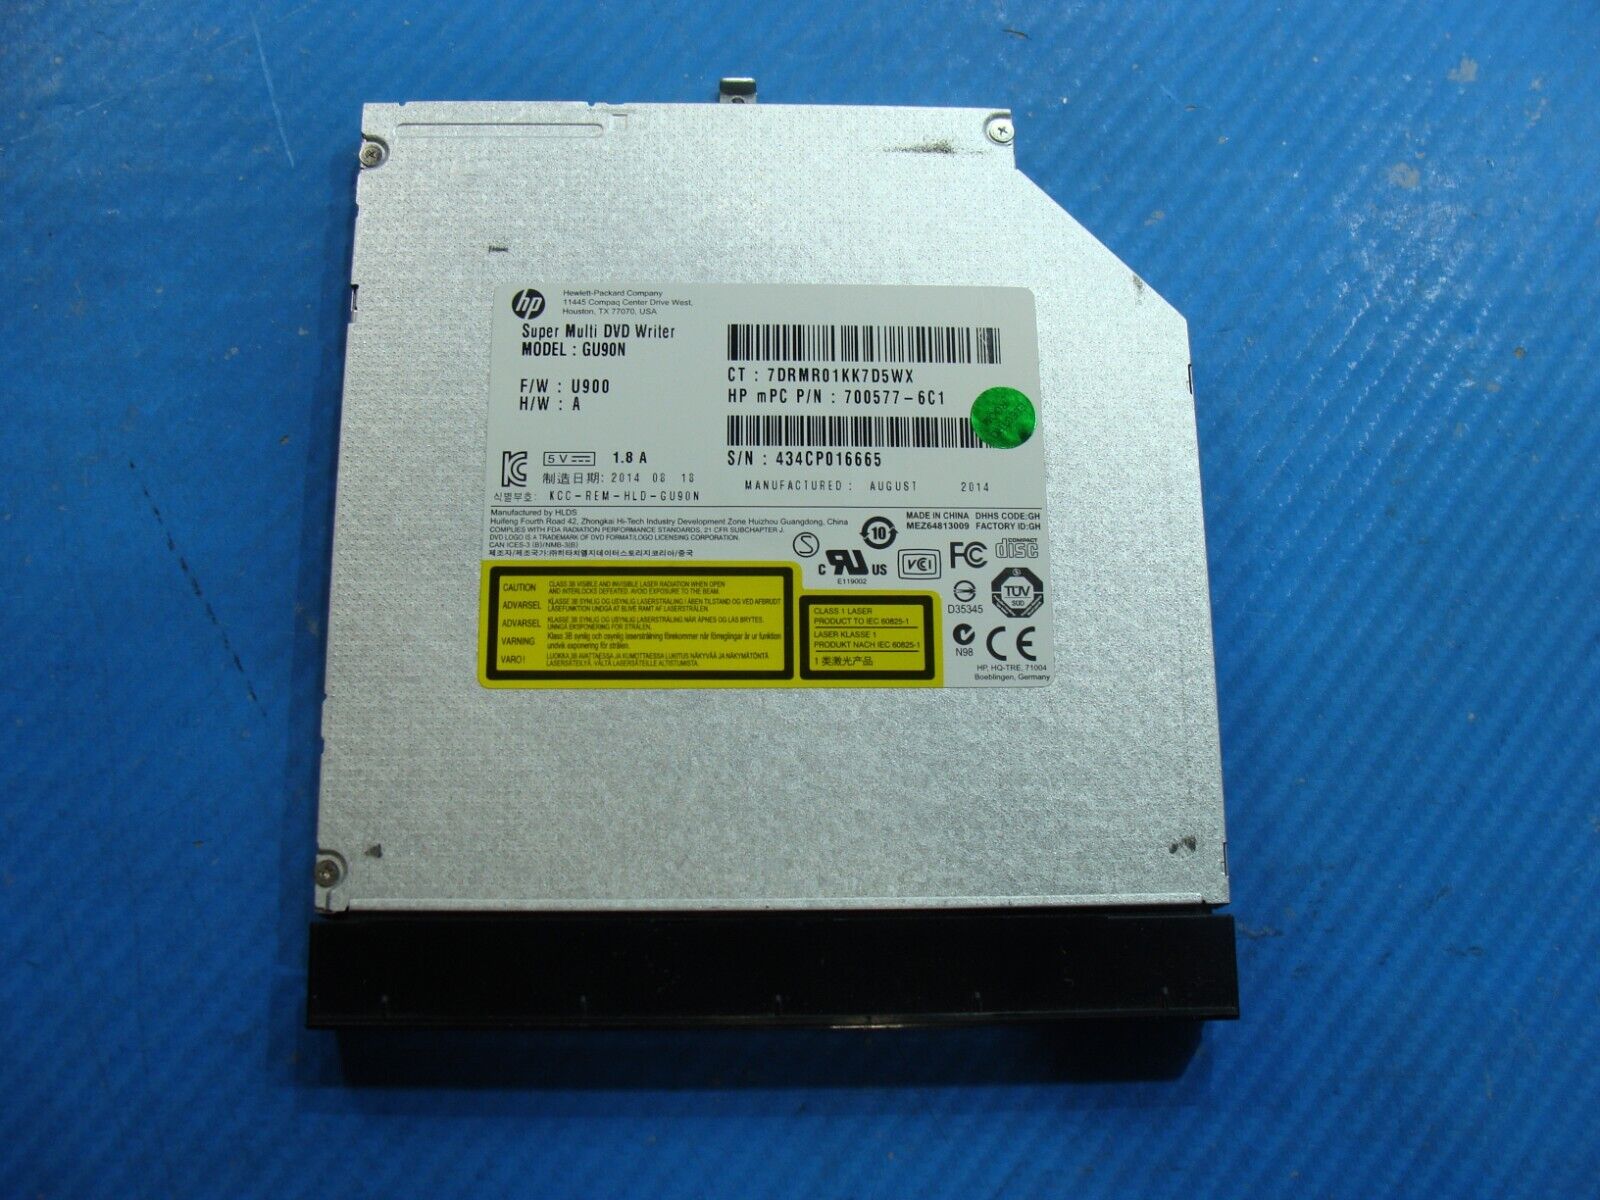 HP 15.6” 15-ro53cl OEM Laptop Super Multi DVD-RW Burner Drive GU90N 700577-6C1